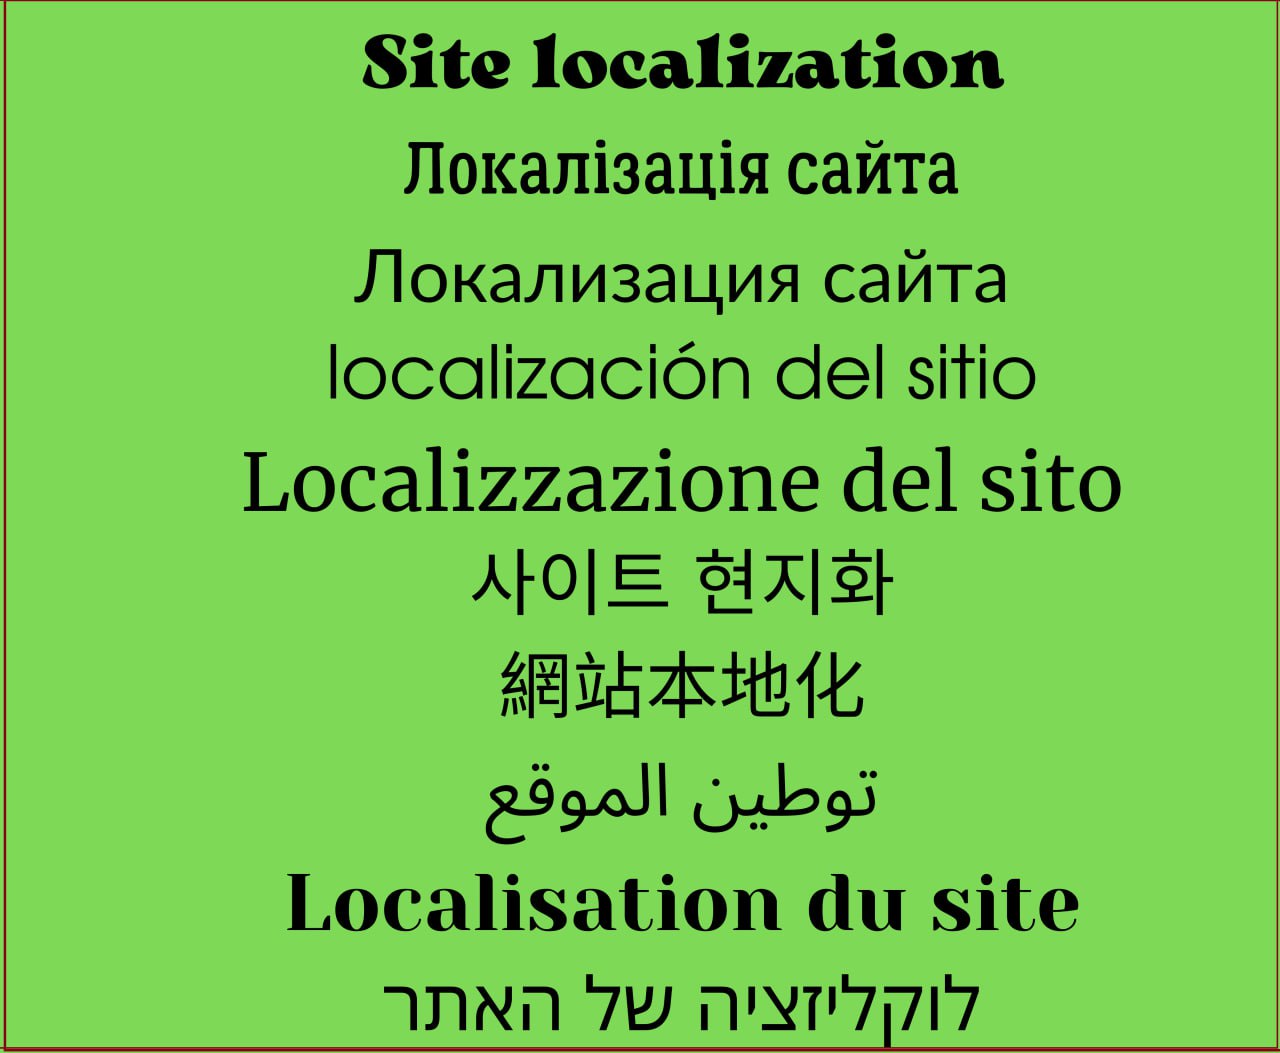 Локализация сайта.